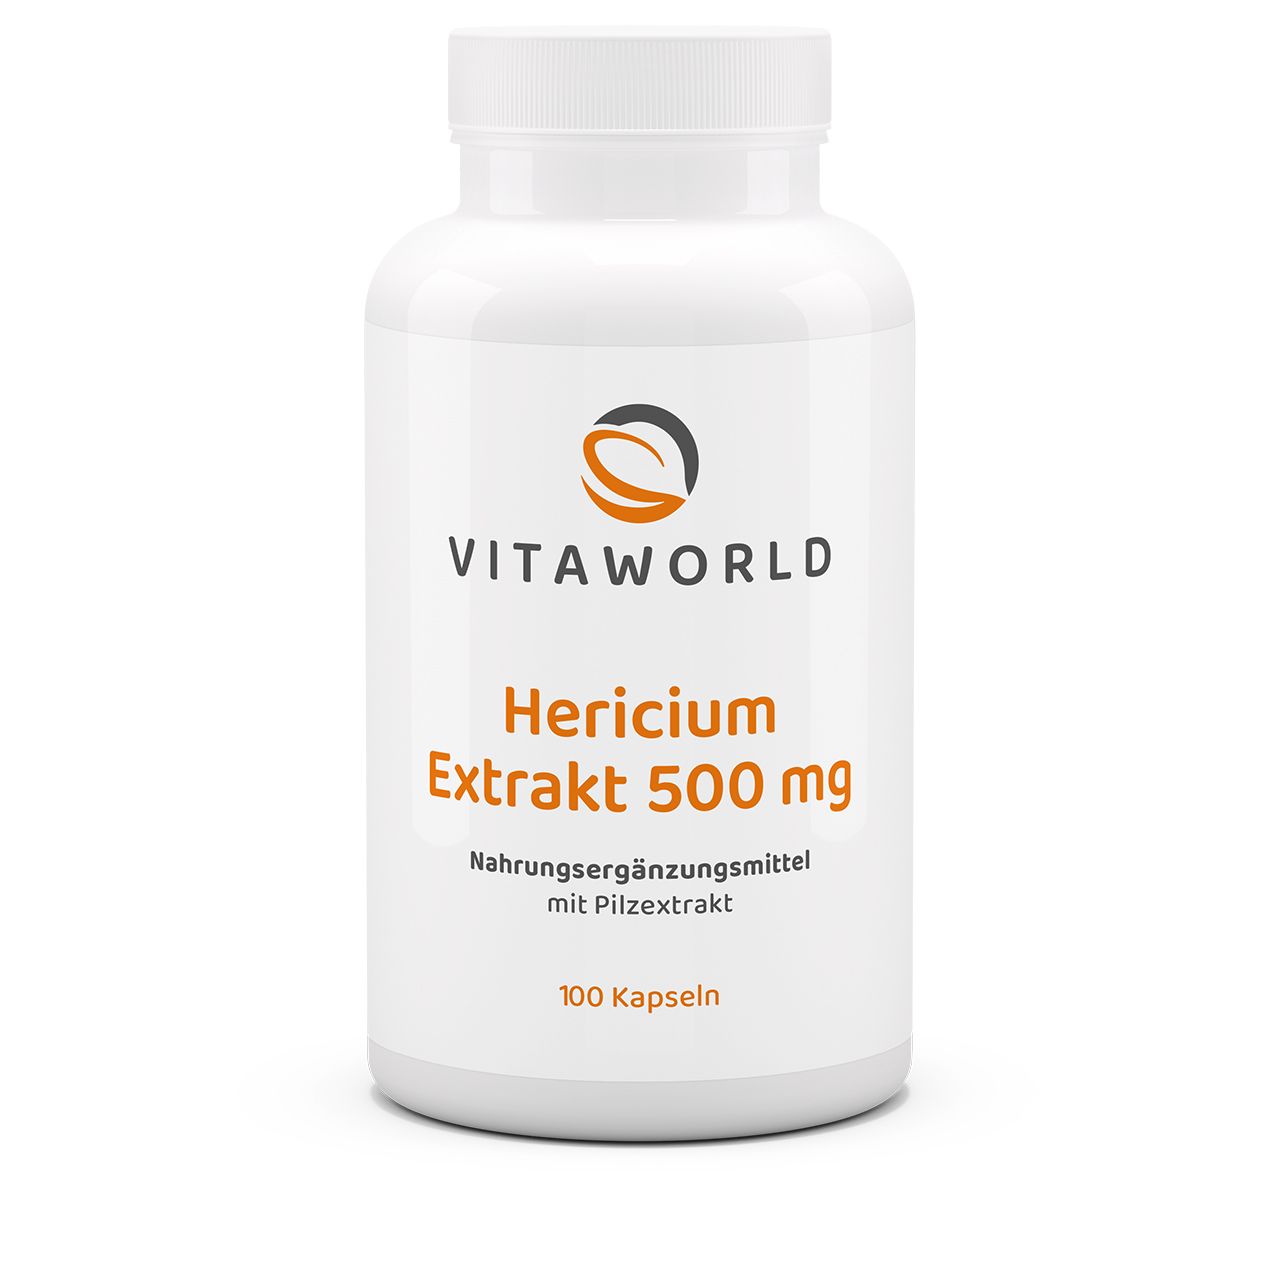 Vitaworld Hericium Extrakt 500 mg | 100 Kapseln | Igelstachelbart | vegan | gluten- und laktosefrei